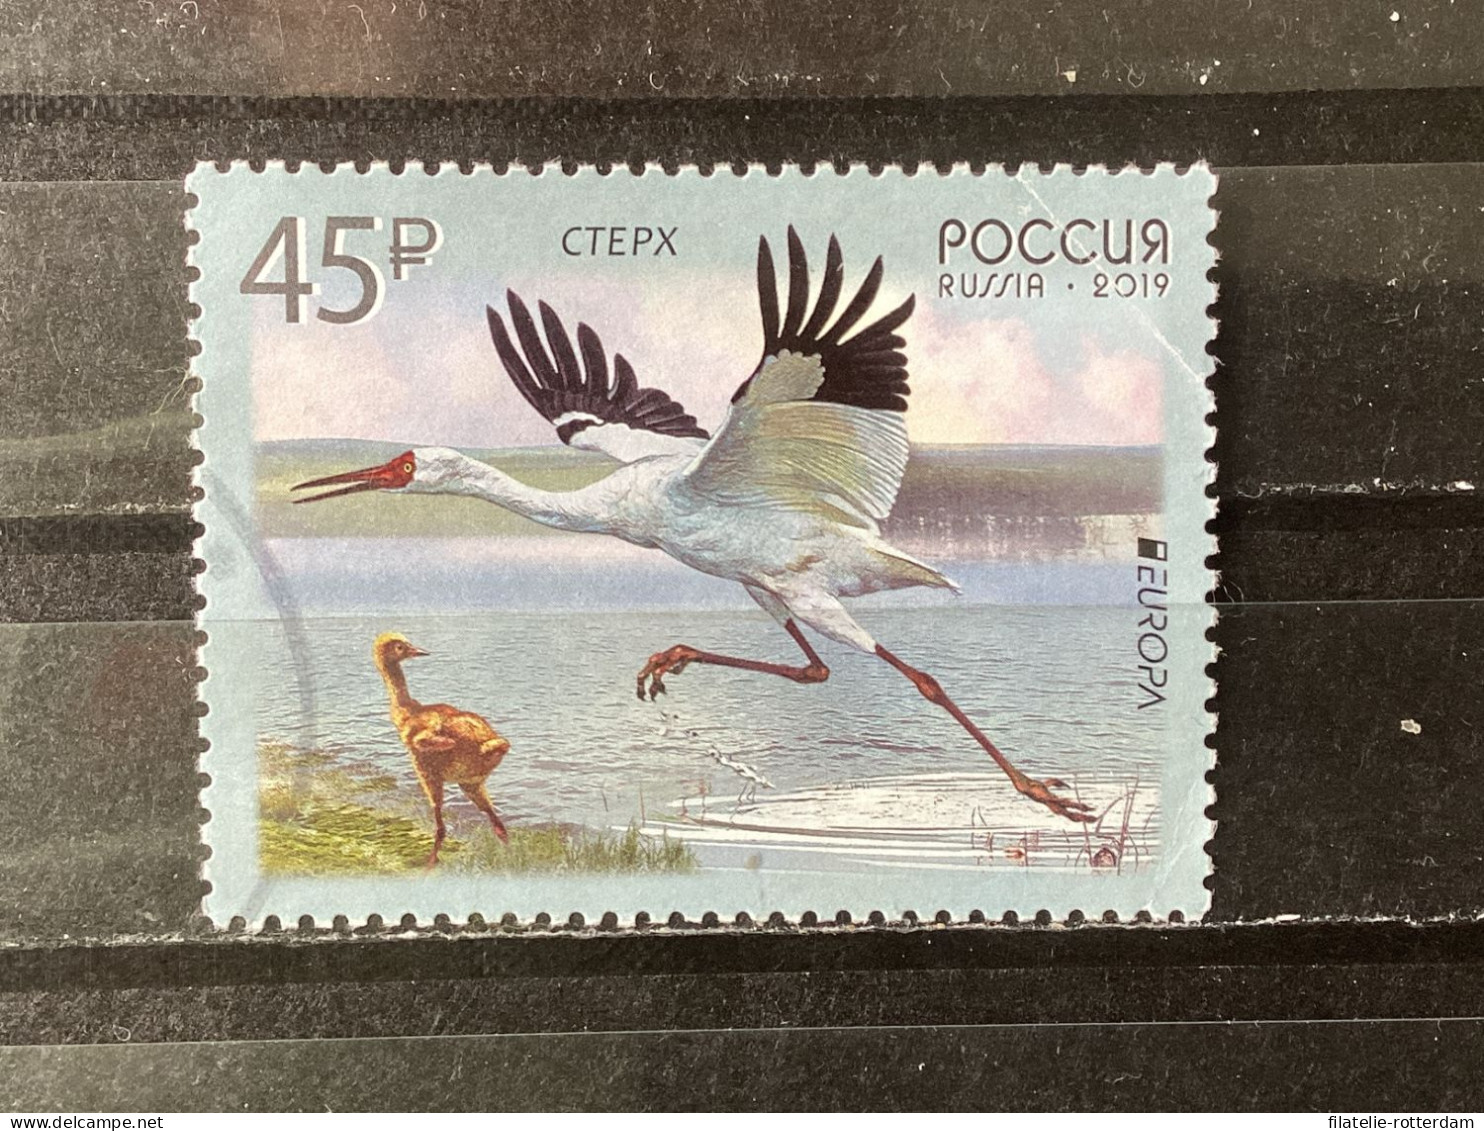 Russia / Rusland - Birds (45) 2019 - Gebruikt